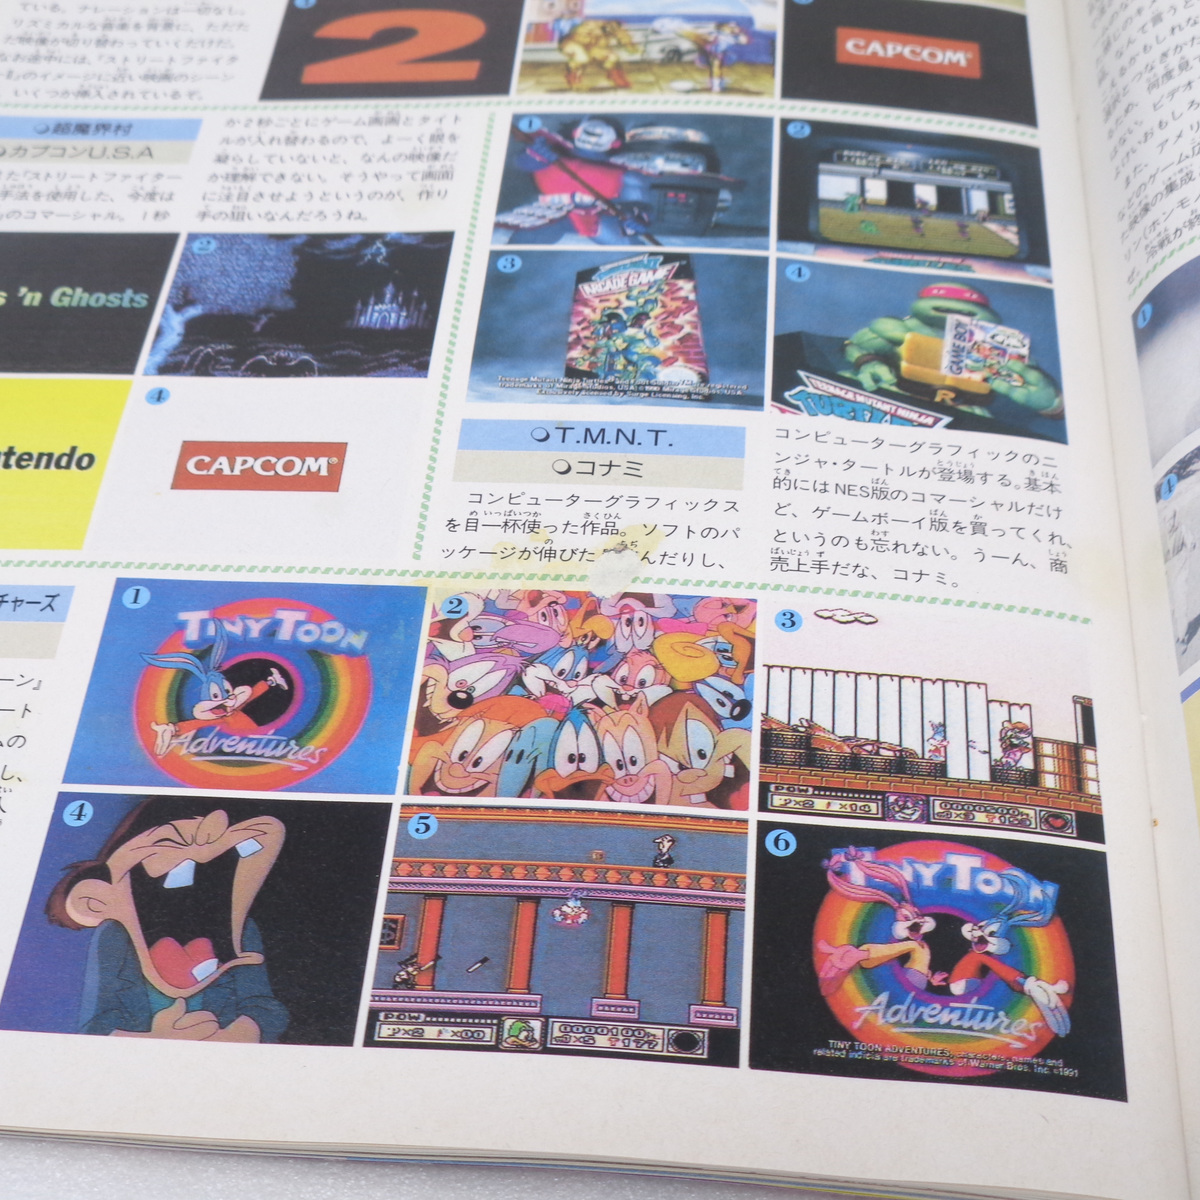 WEEKLYファミコン通信 1993年4月16日号No.226 /任天堂衛星ゲーム計画/カウントダウンホット100/ファミ通/ゲーム雑誌[送料無料 即決]の画像9